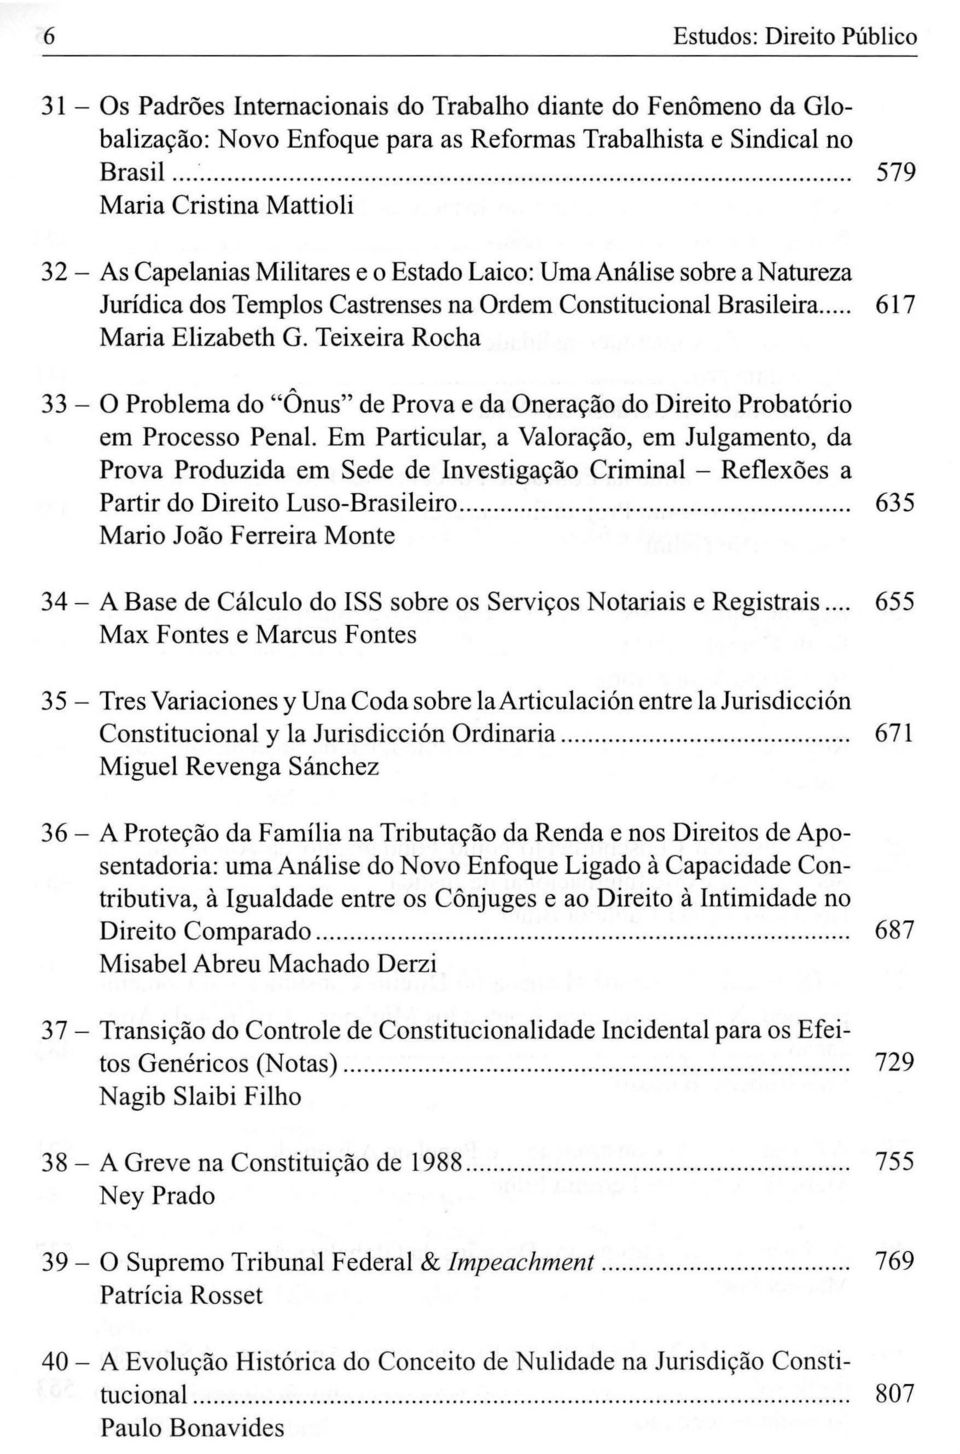 .. 617 Maria Elizabeth G. Teixeira Rocha 33 - O Problema do "Ônus" de Prova e da Oneração do Direito Probatório em Processo Penal.